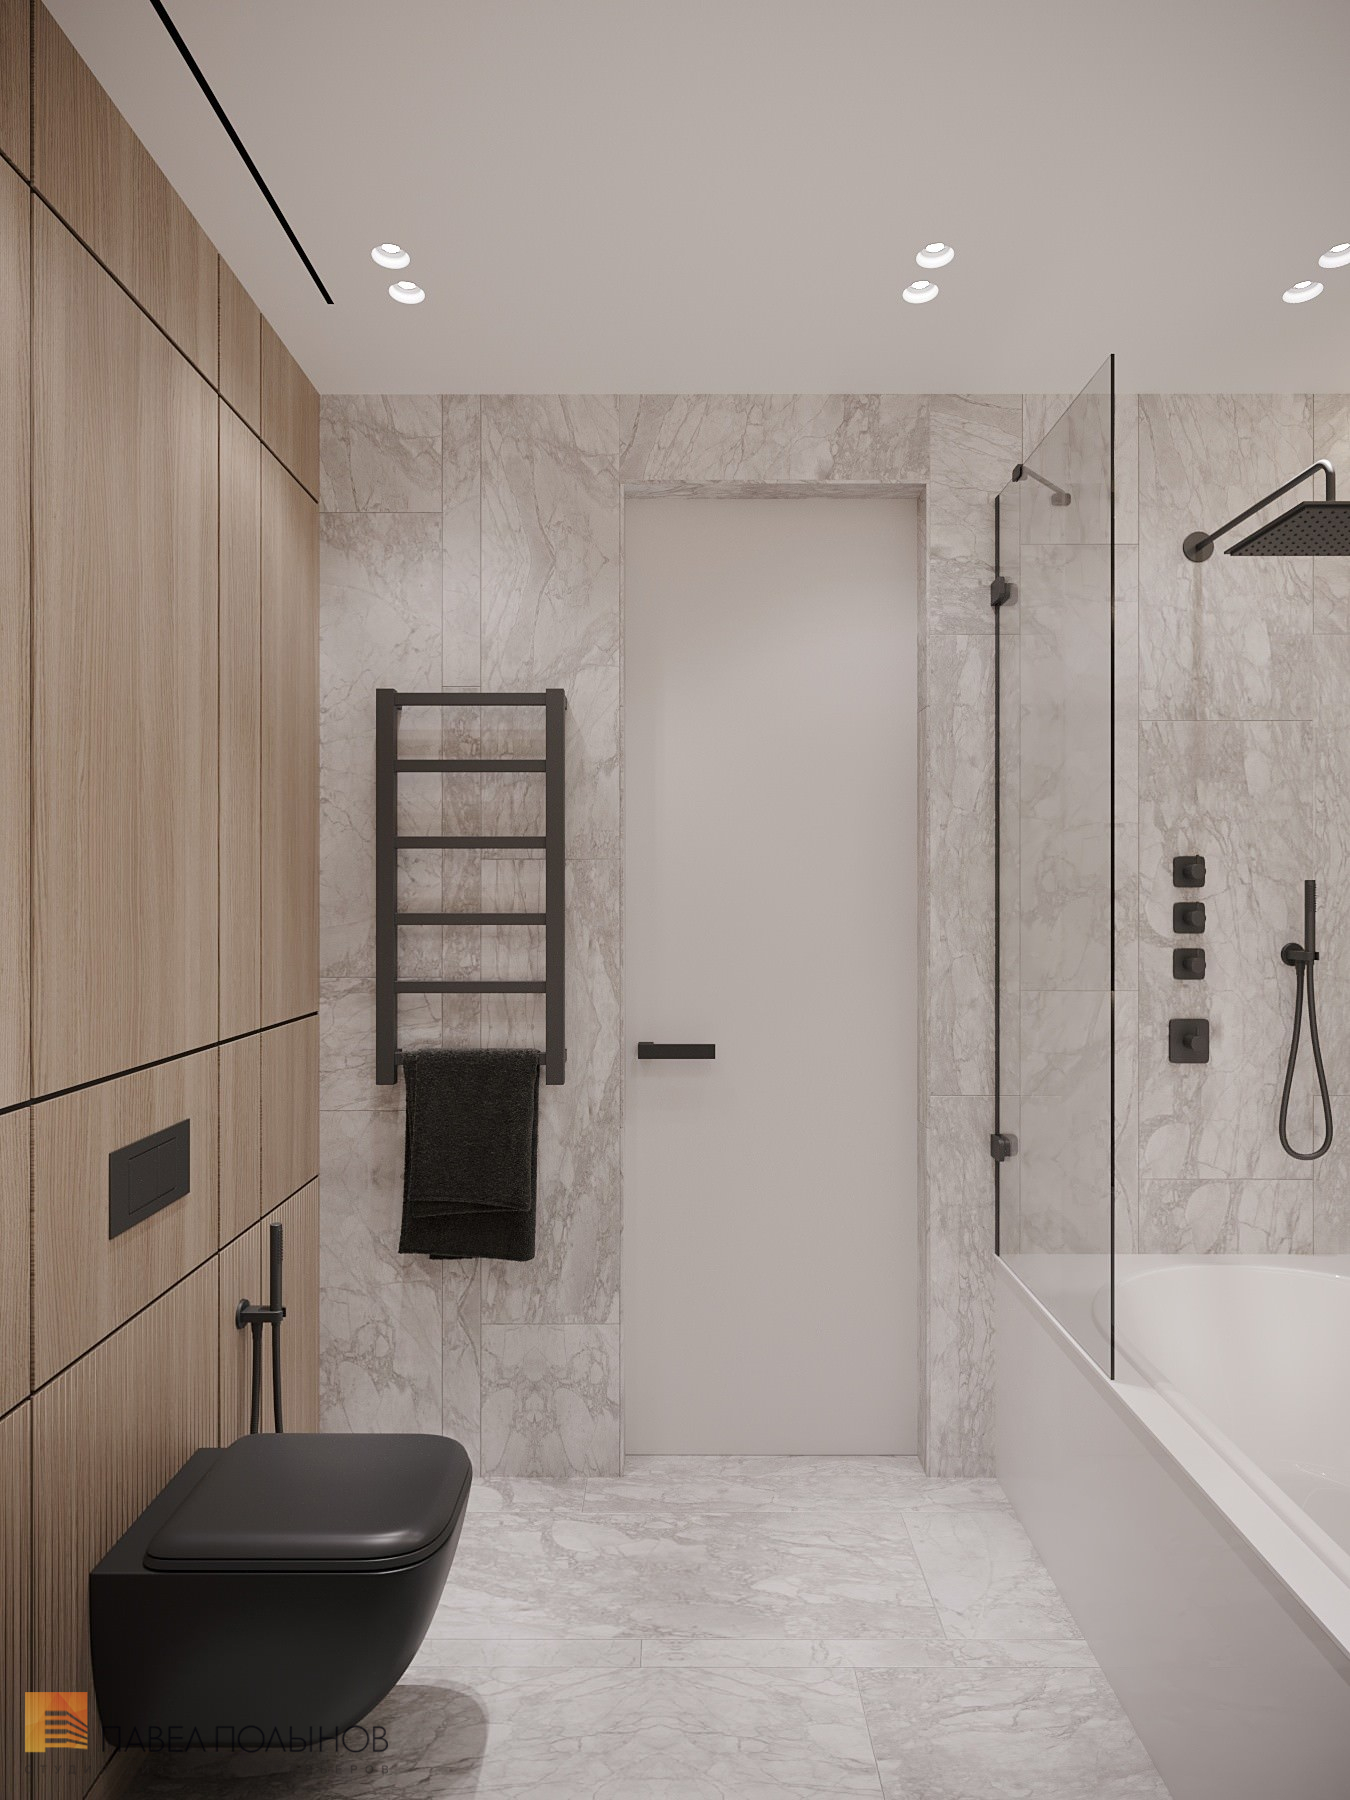 Фото дизайн ванной комнаты из проекта «Просторная квартира в современном стиле, ЖК «Duderhof Club», 146 кв.м.»